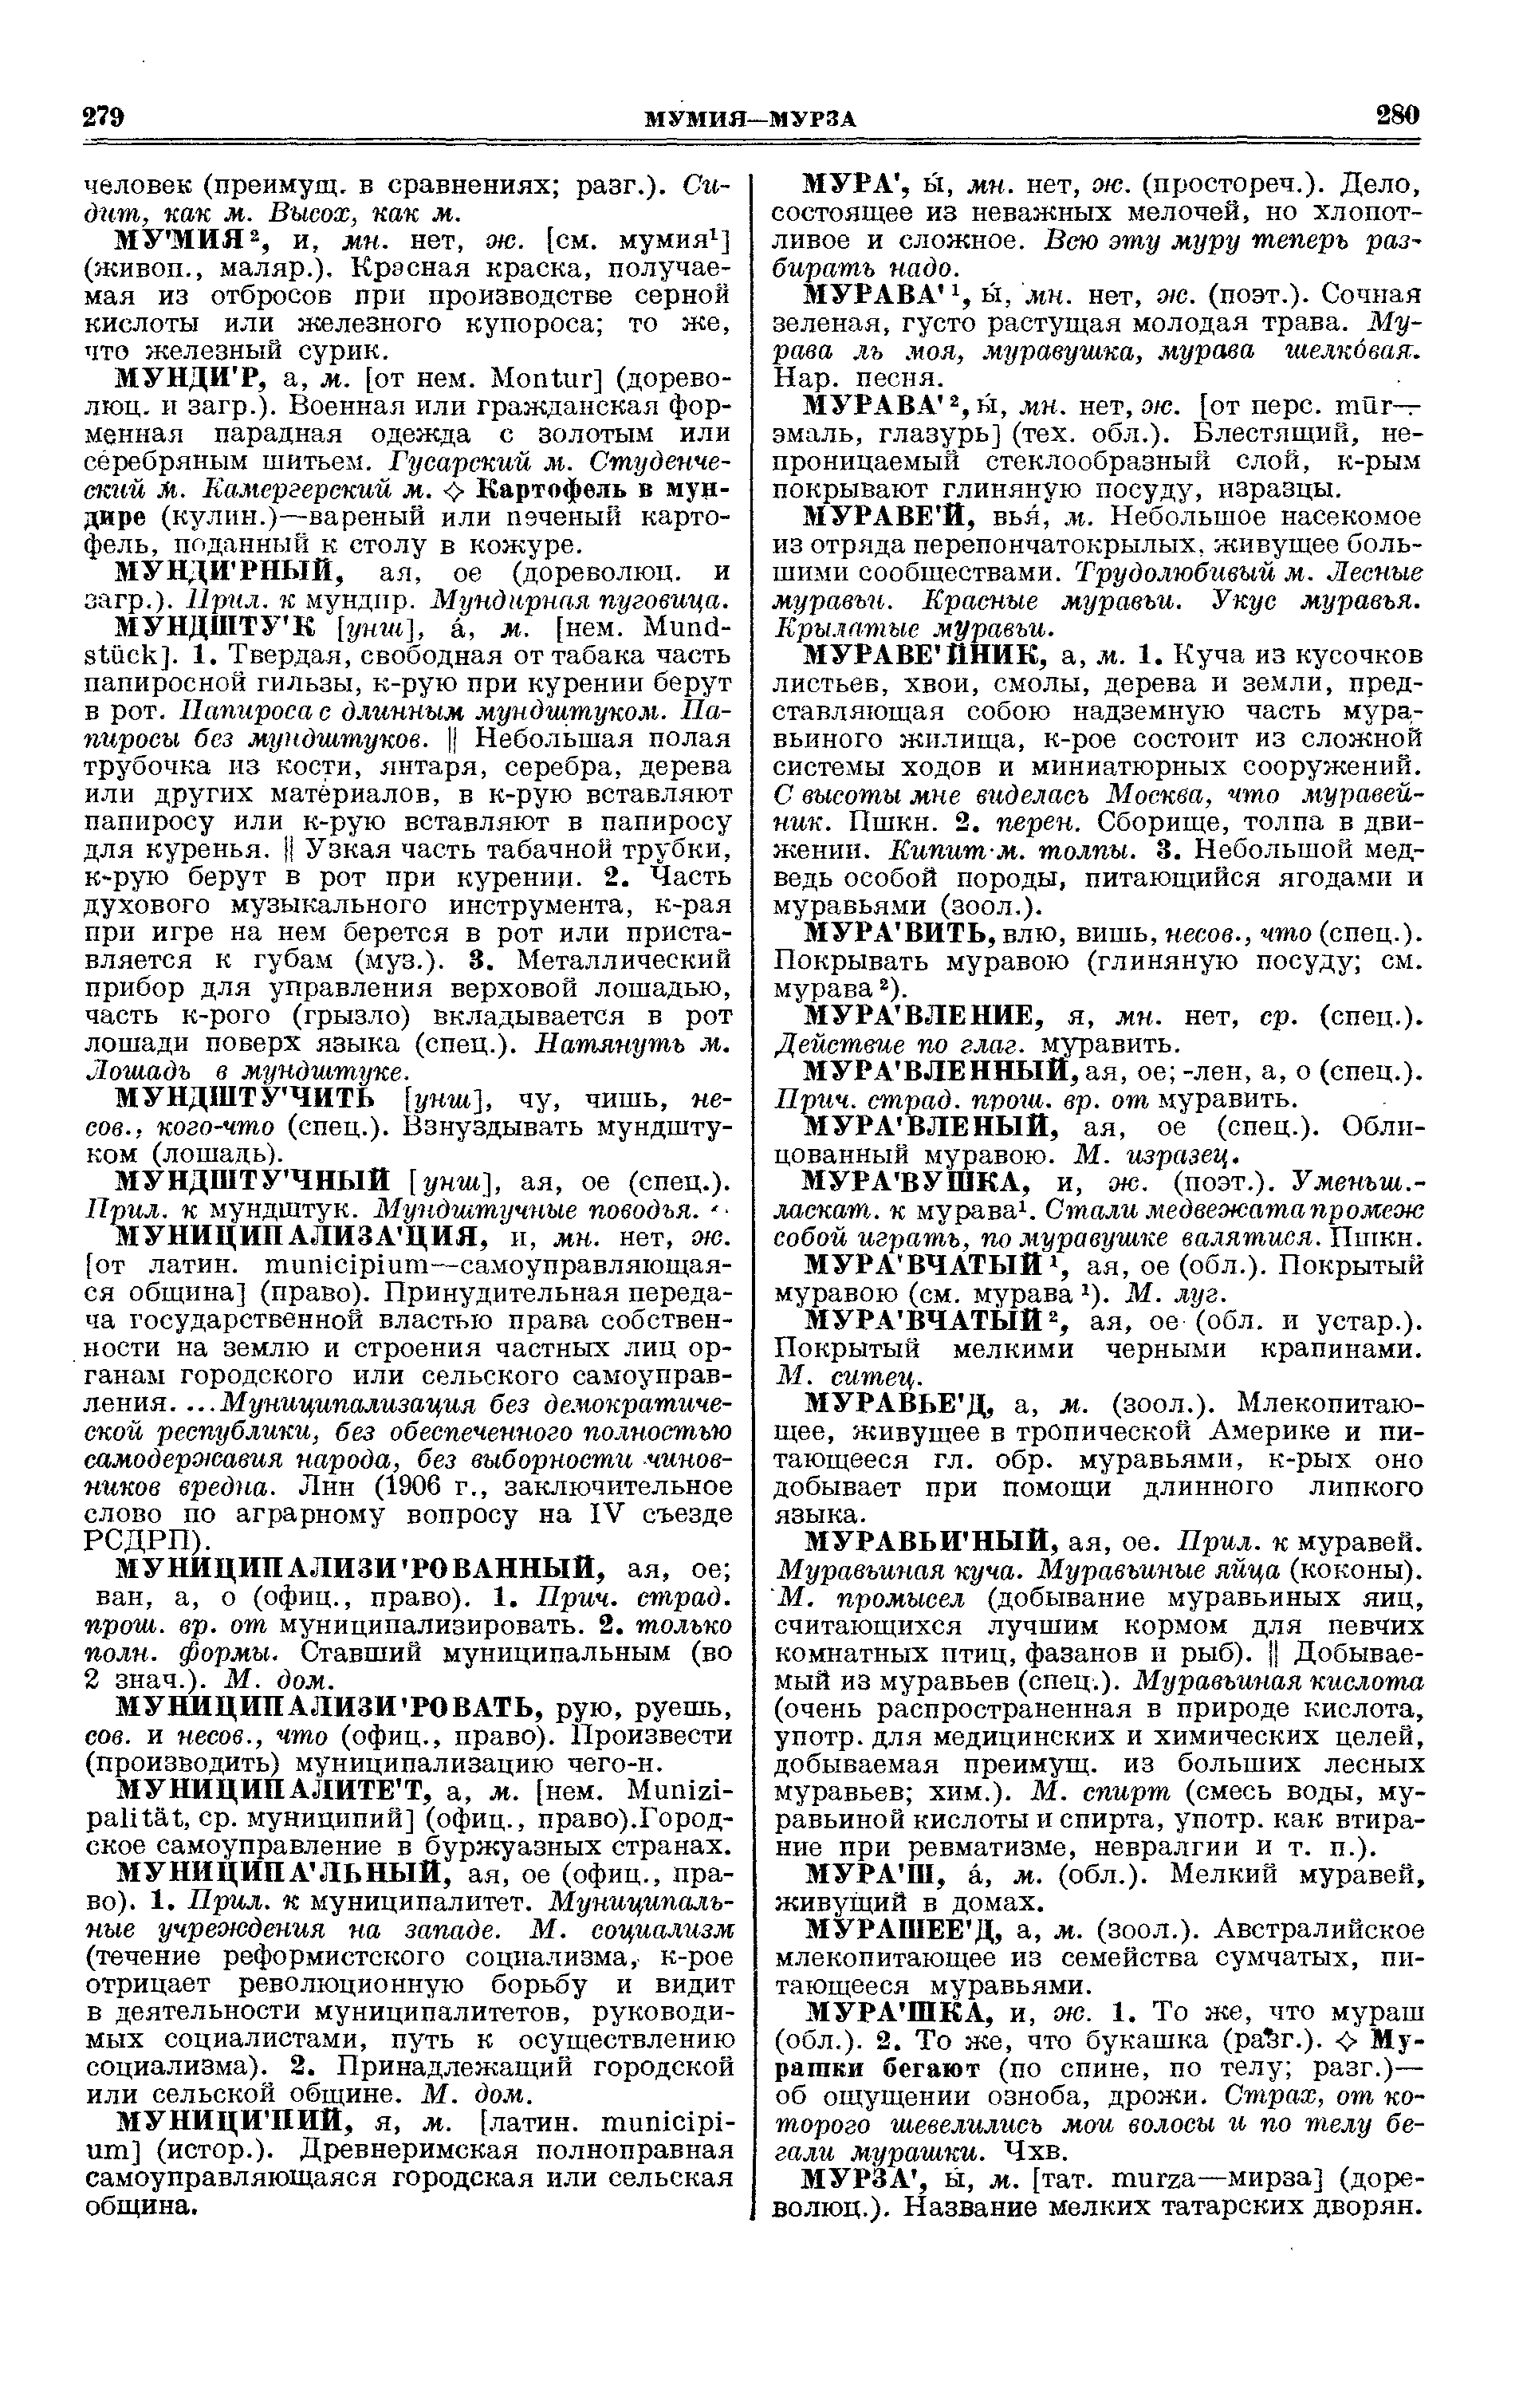 Фотокопия pdf / скан страницы 140 толкового словаря Ушакова (том 2)